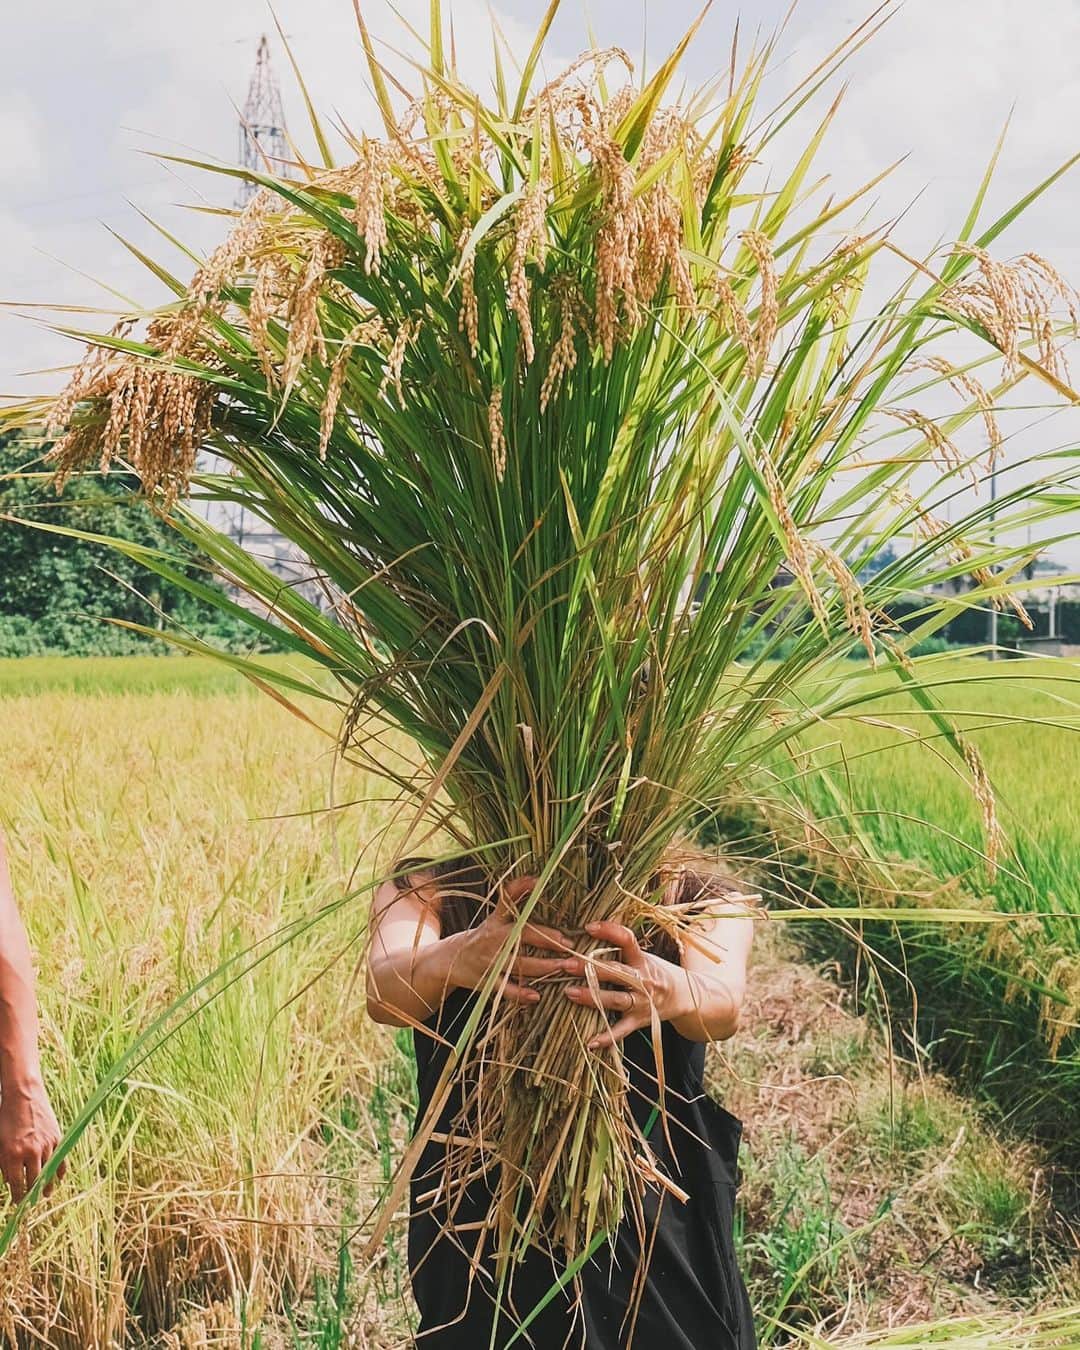 Kazukiのインスタグラム：「無添加、無農薬のお米作りチャレンジも最終章の稲刈り🌾 . 安全安心なお米を育ててみたいと思って購入させてもらった田んぼが、 気づいてみたら関わってくれる友達、家族、社員、取引先、色々な出会いと想いが繋がる場所になった“田んぼ” . 土を育て、水を循環させ、自然の力でお米が成長する周期を経験できることは貴重な経験になります。 ここからは短年ブームではなくて、長期カルチャーとして貢献できる環境を創出していきます🌍 . 良い考えや取り組みは、必ず根をはり花を咲かせる。 素敵な出会いが実る場所 @kiraboshi_farm  . . . #複合発酵#常在菌#循環#稲刈り#栃木県#小山市#お米#農業体験#キラ星農園#オーガニック米#手植え#一粒万倍日#無農薬米」